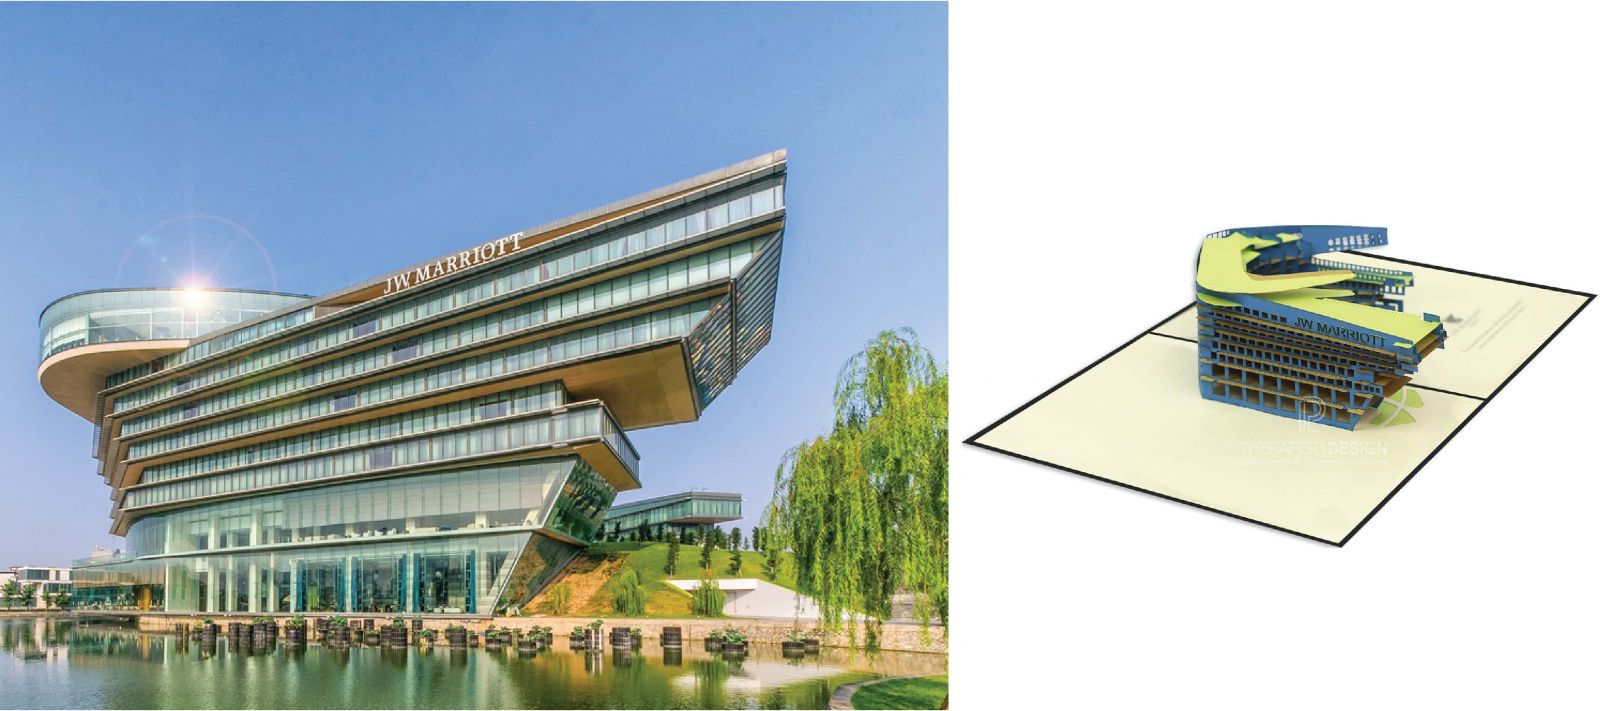 Thiệp 3D khách sạn JW Mariott Hà Nội - The Paper Design